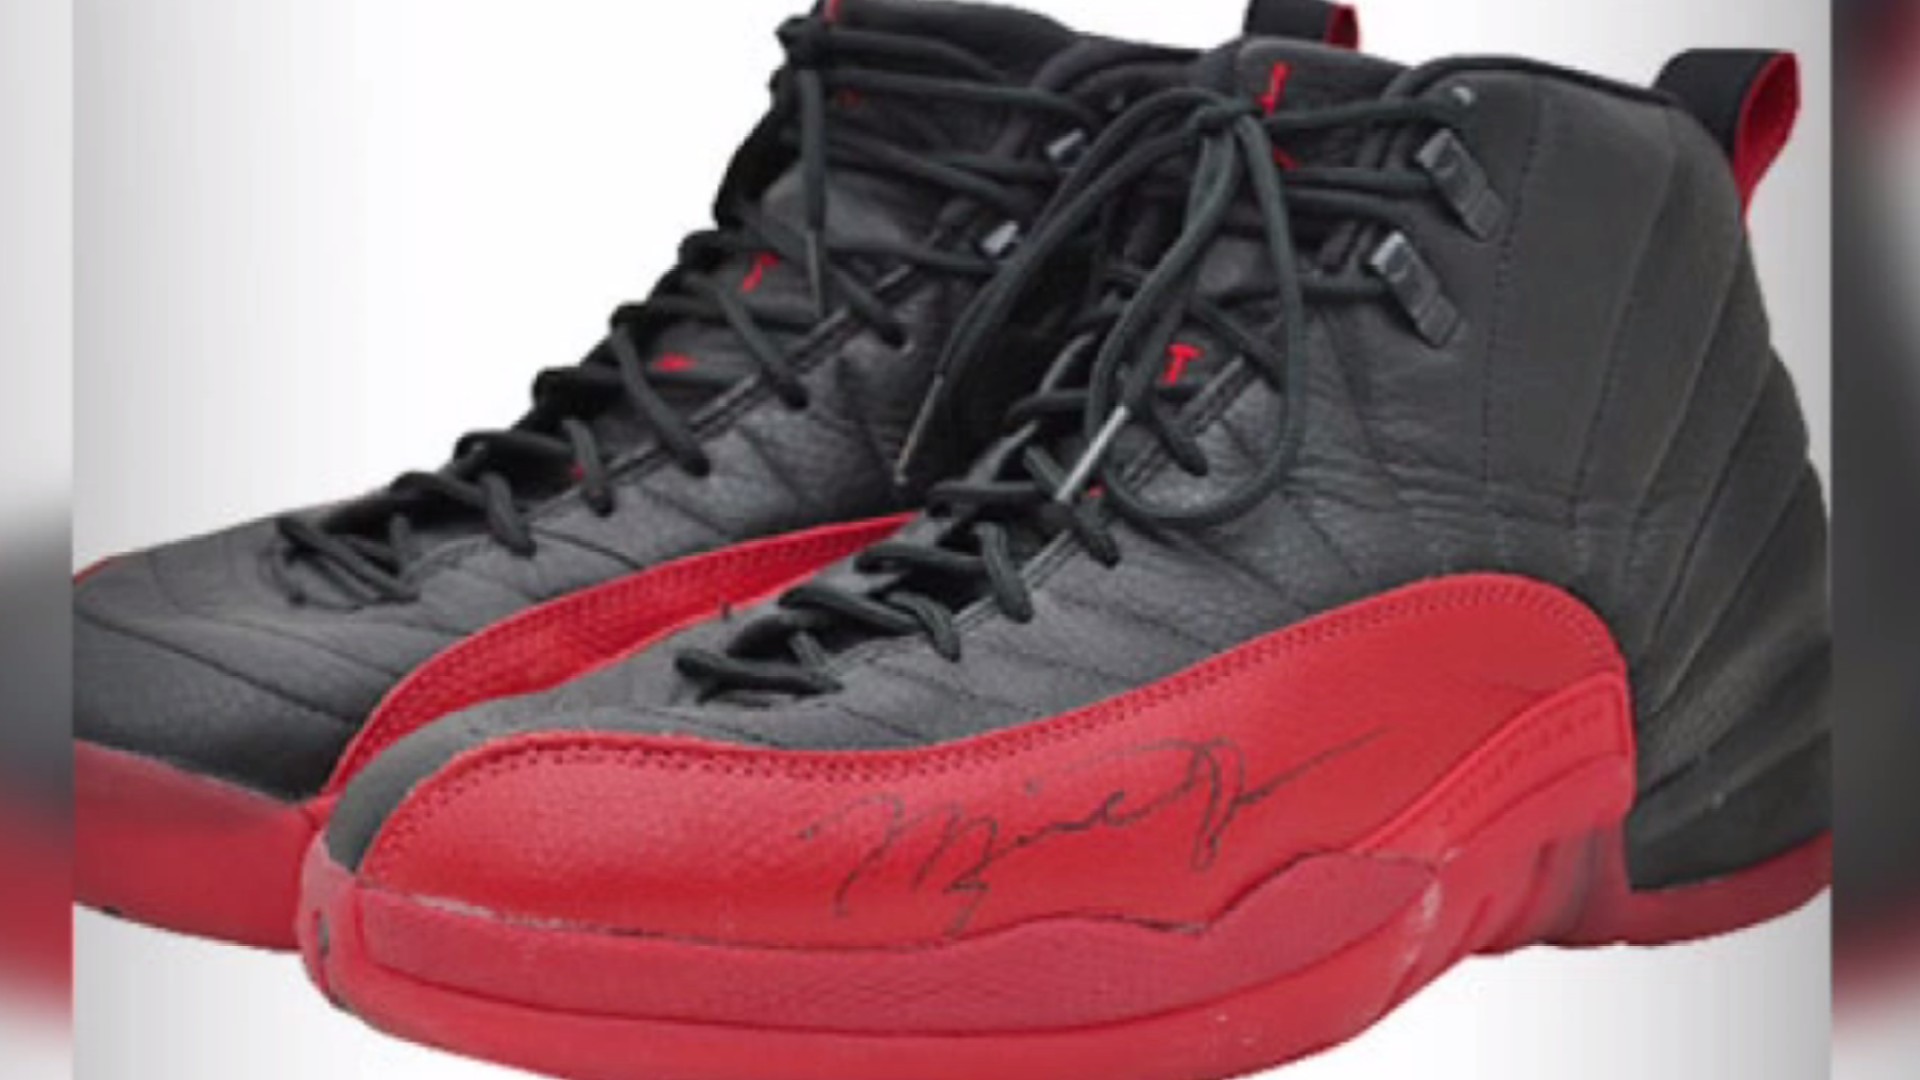 Michael Jordan Autographed Nike Air Jordan 12 Retro Flu Game Shoes